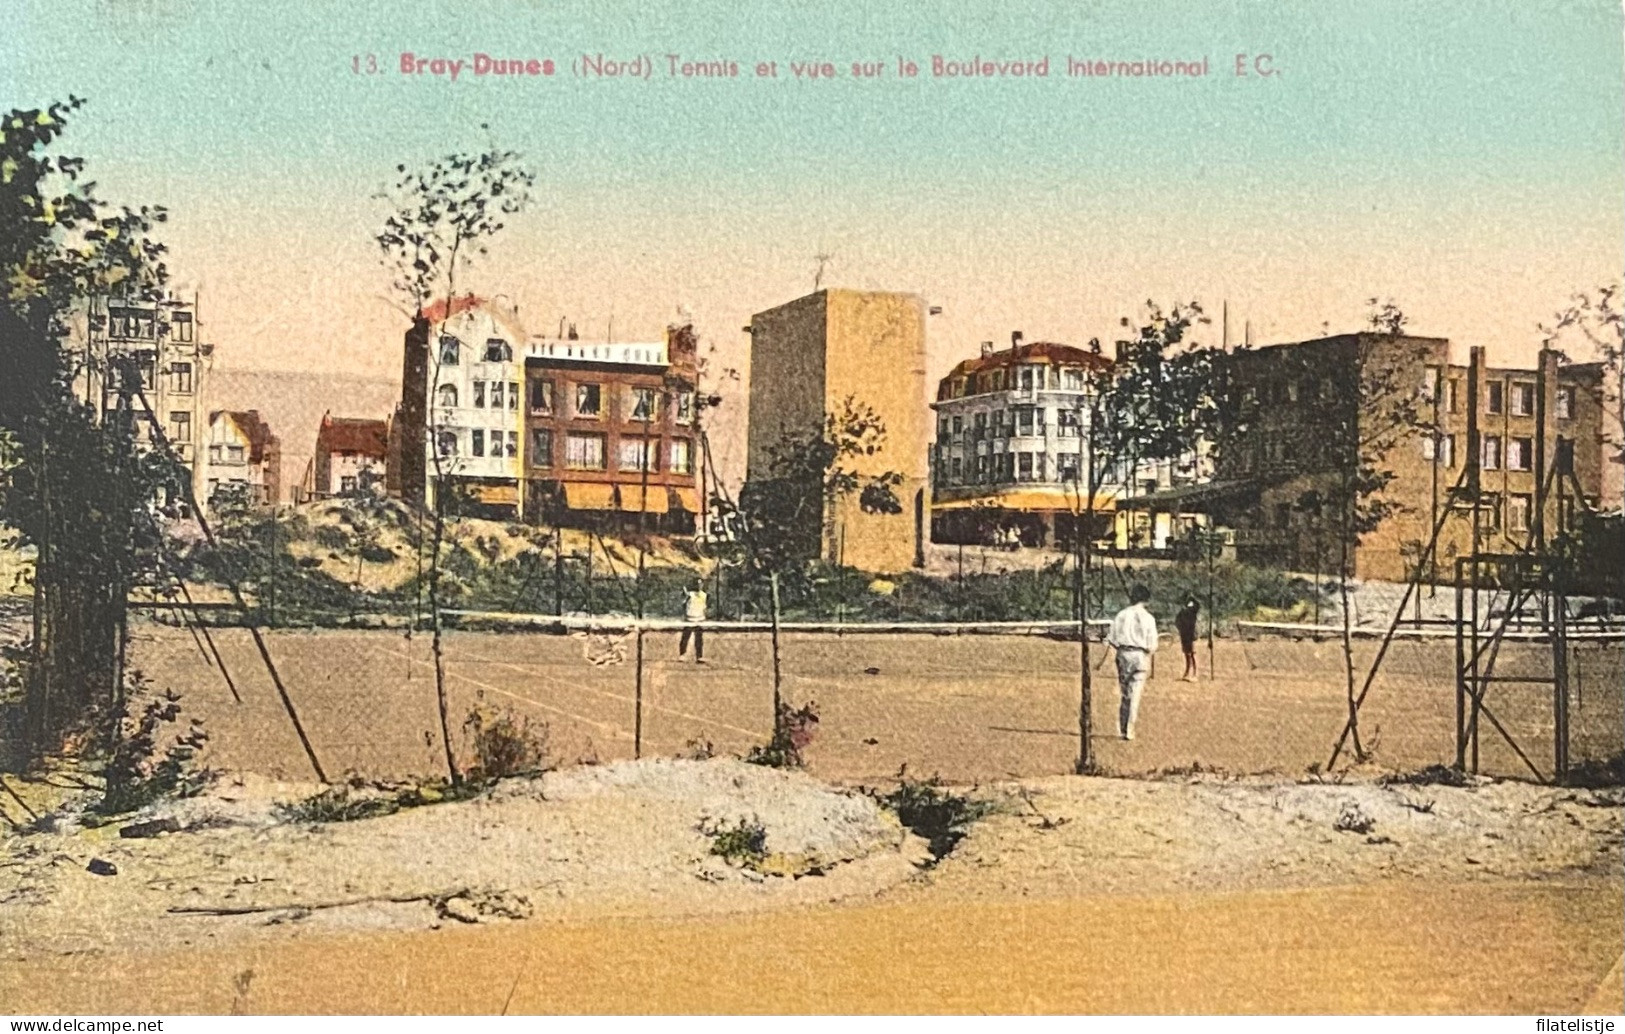 Bray-Dunes Tennis Et Vee Sur Le Boulevard Internationale - Bray-Dunes